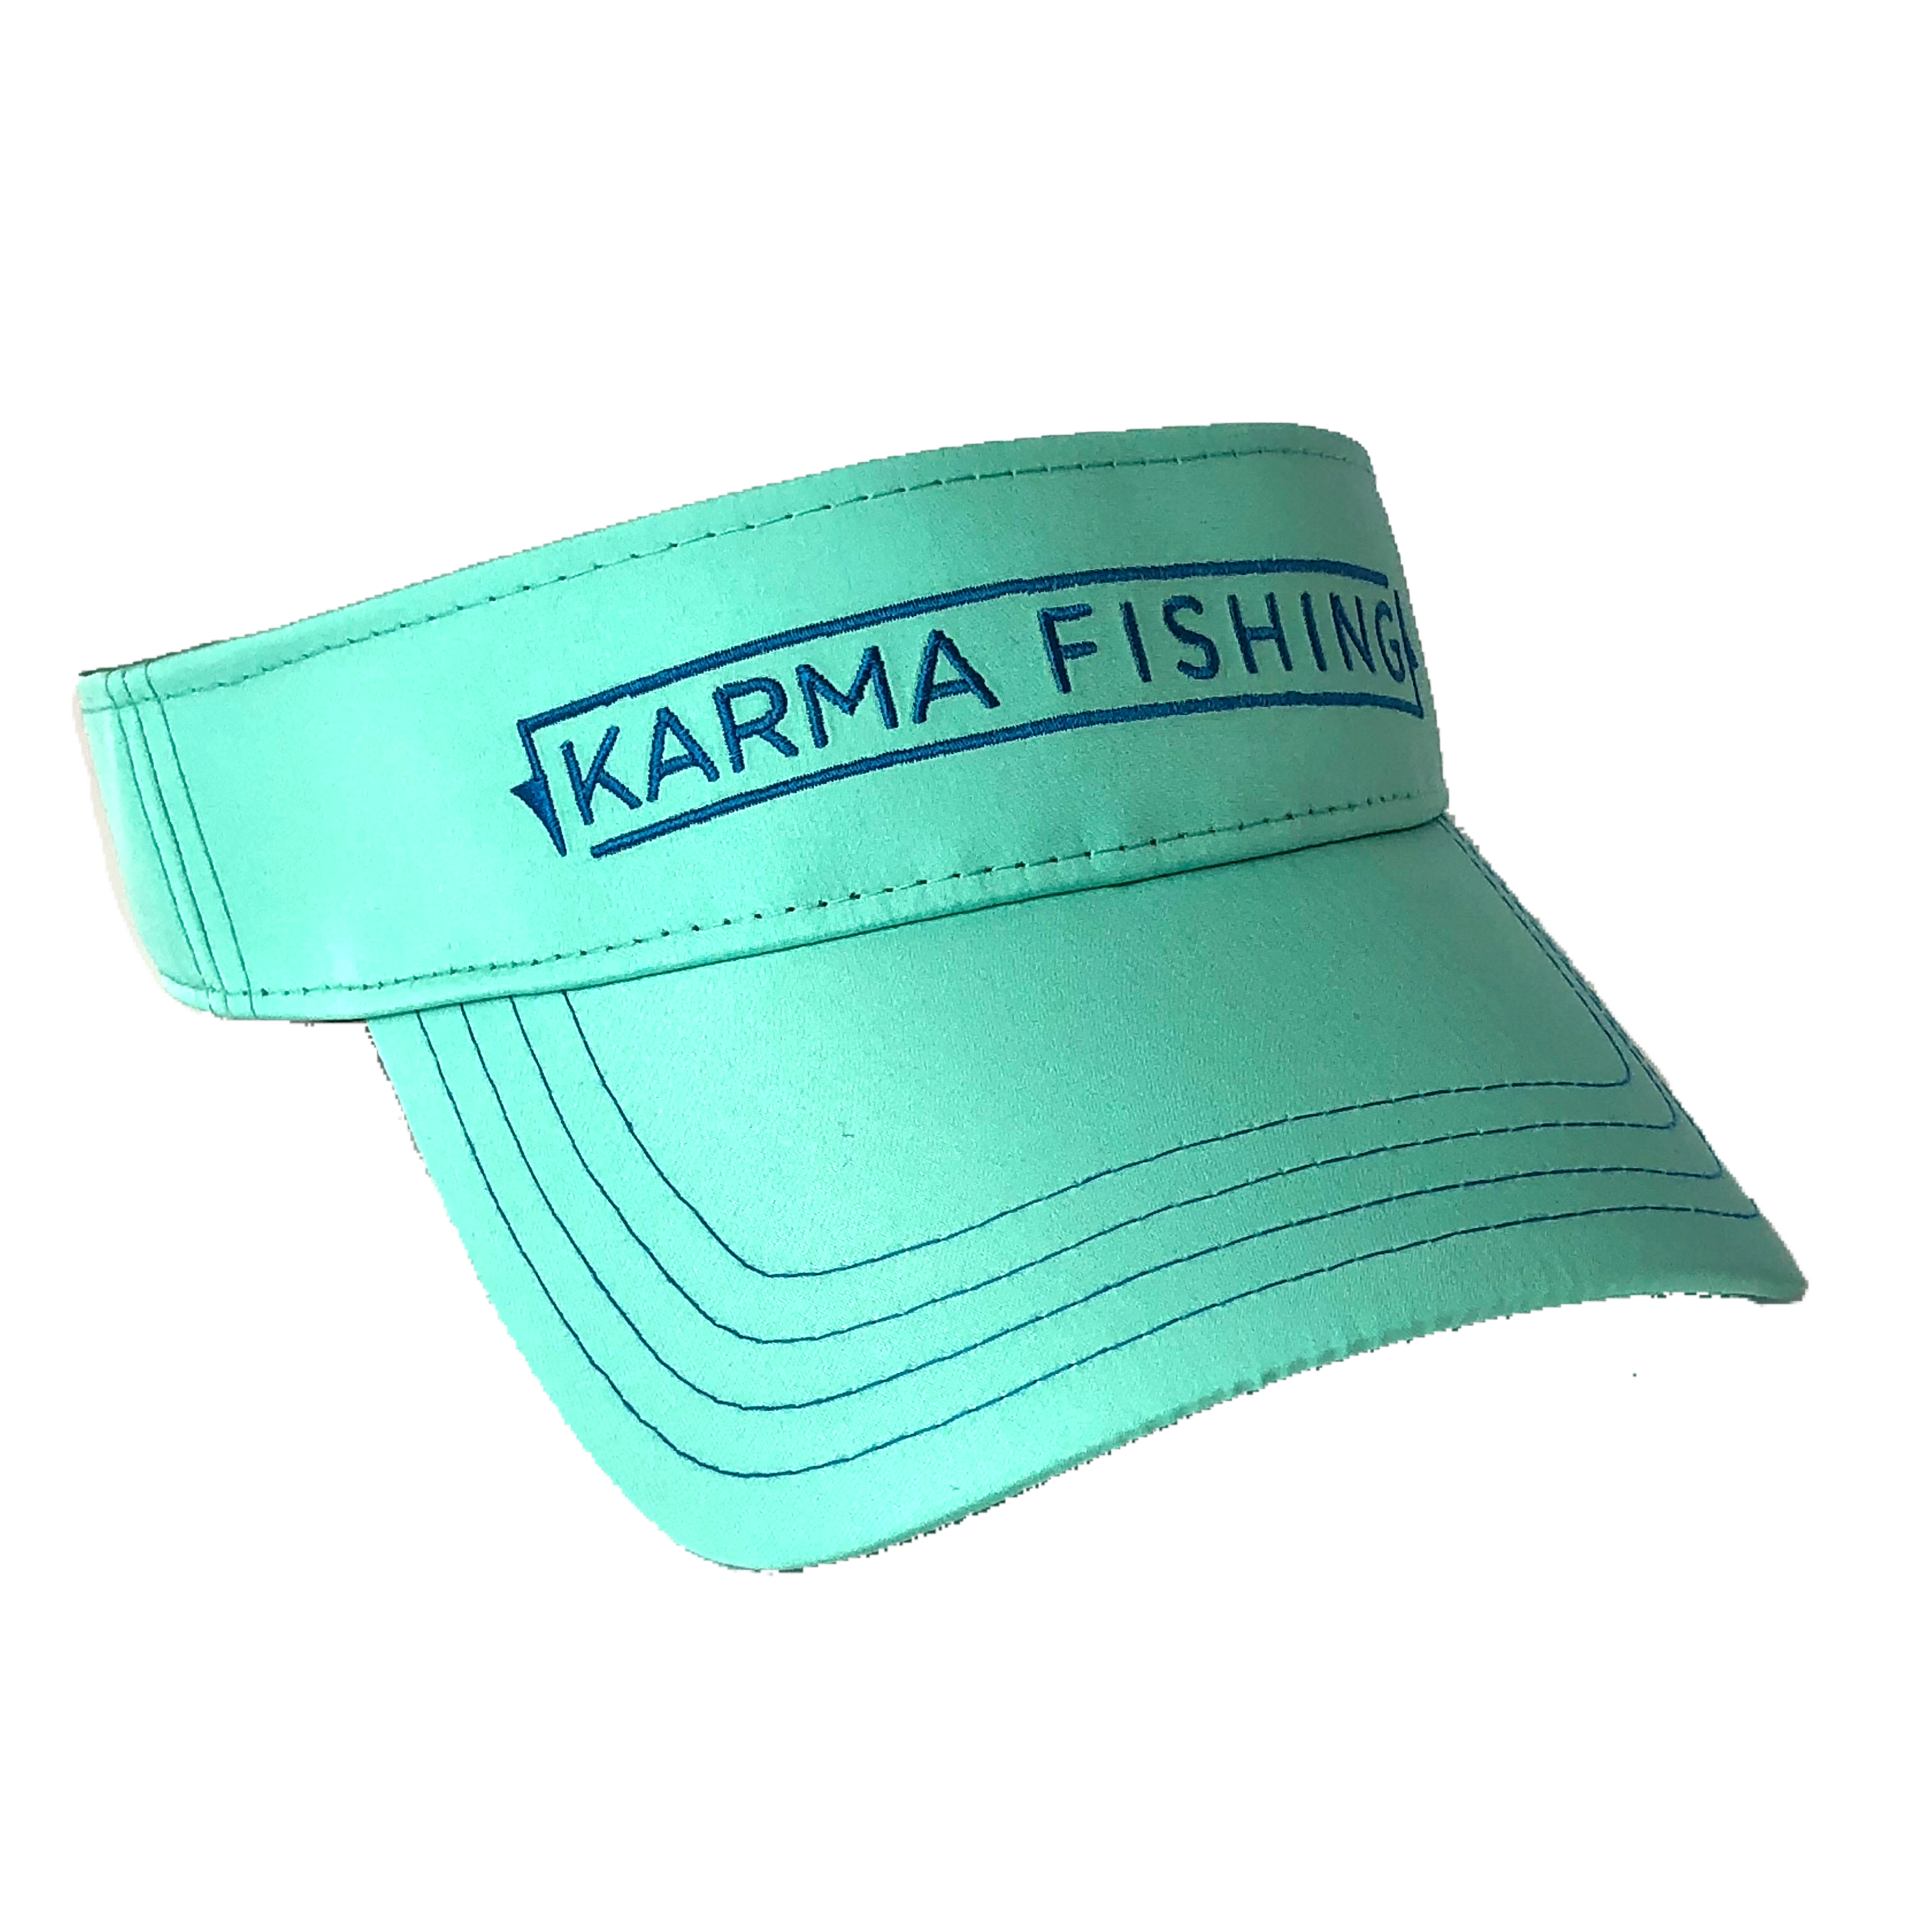 https://karmafishing.com/cdn/shop/products/image_a13db5d1-b2da-4810-b049-4a6120ca697a.png?v=1527118755